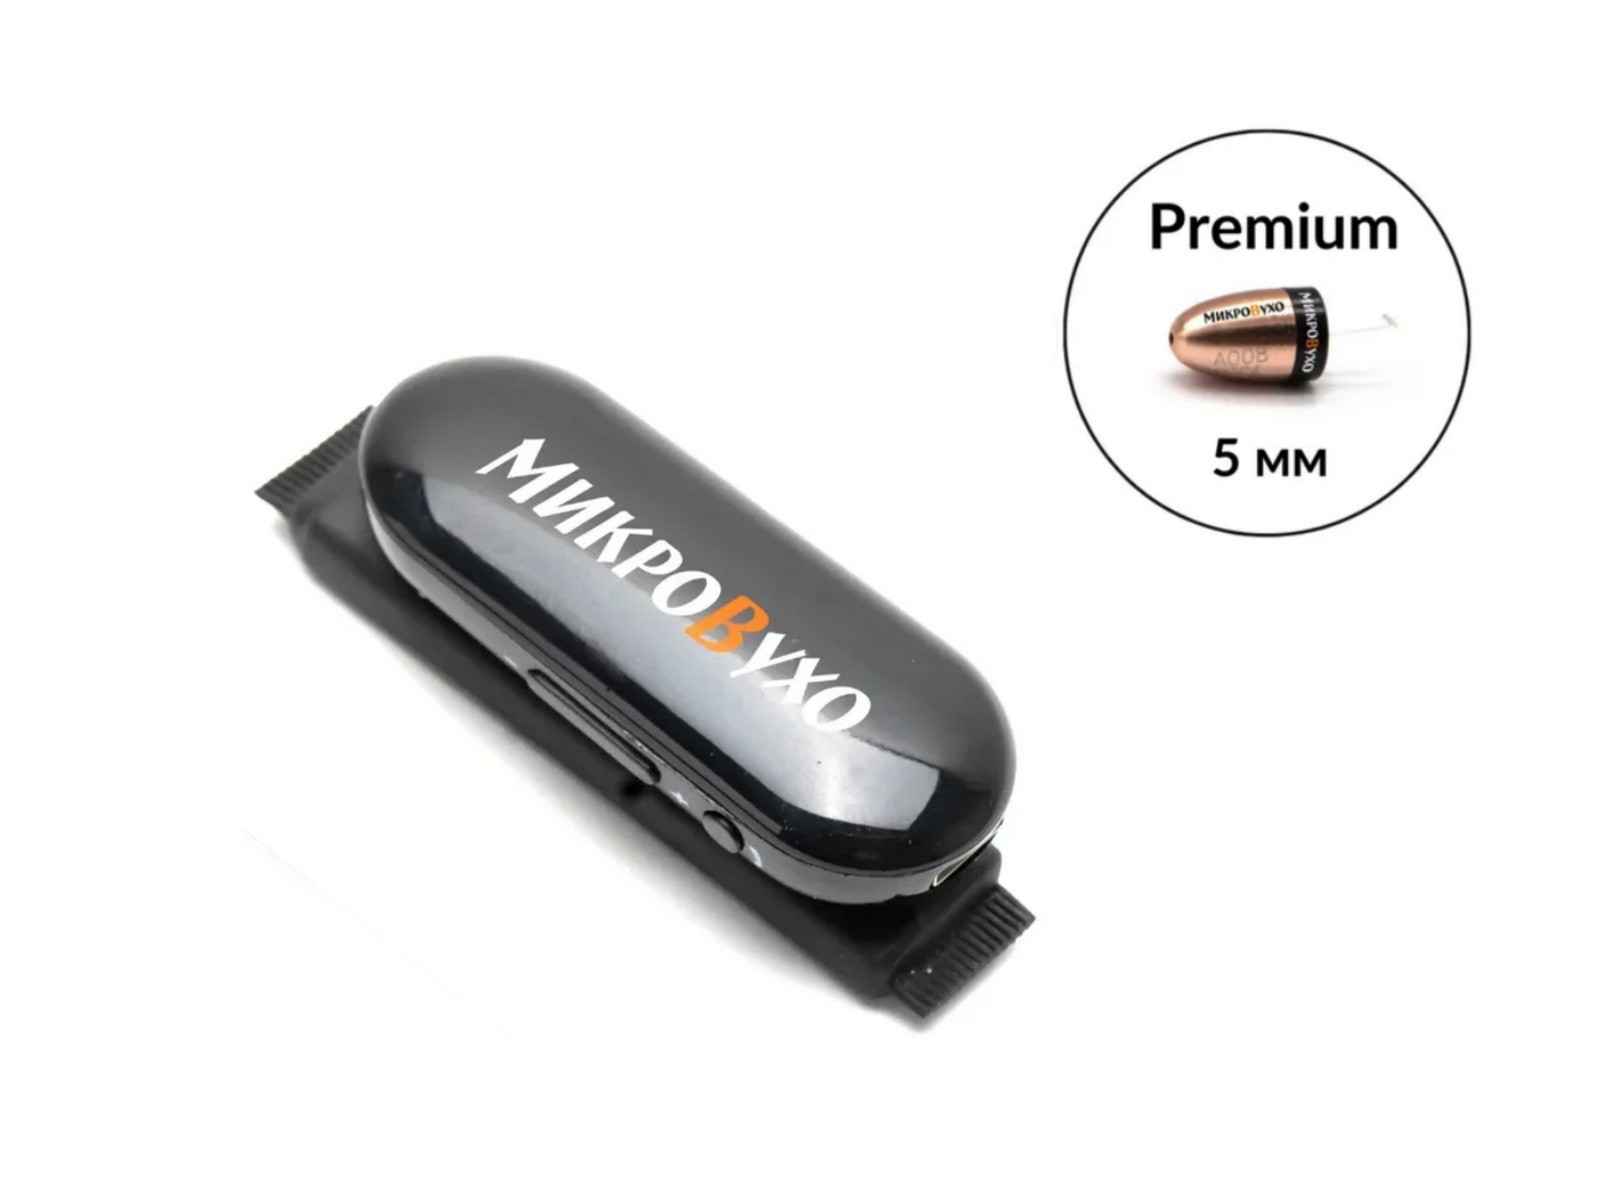 Гарнитура Bluetooth Box PRO Plus c капсульным микронаушником Premium - изображение